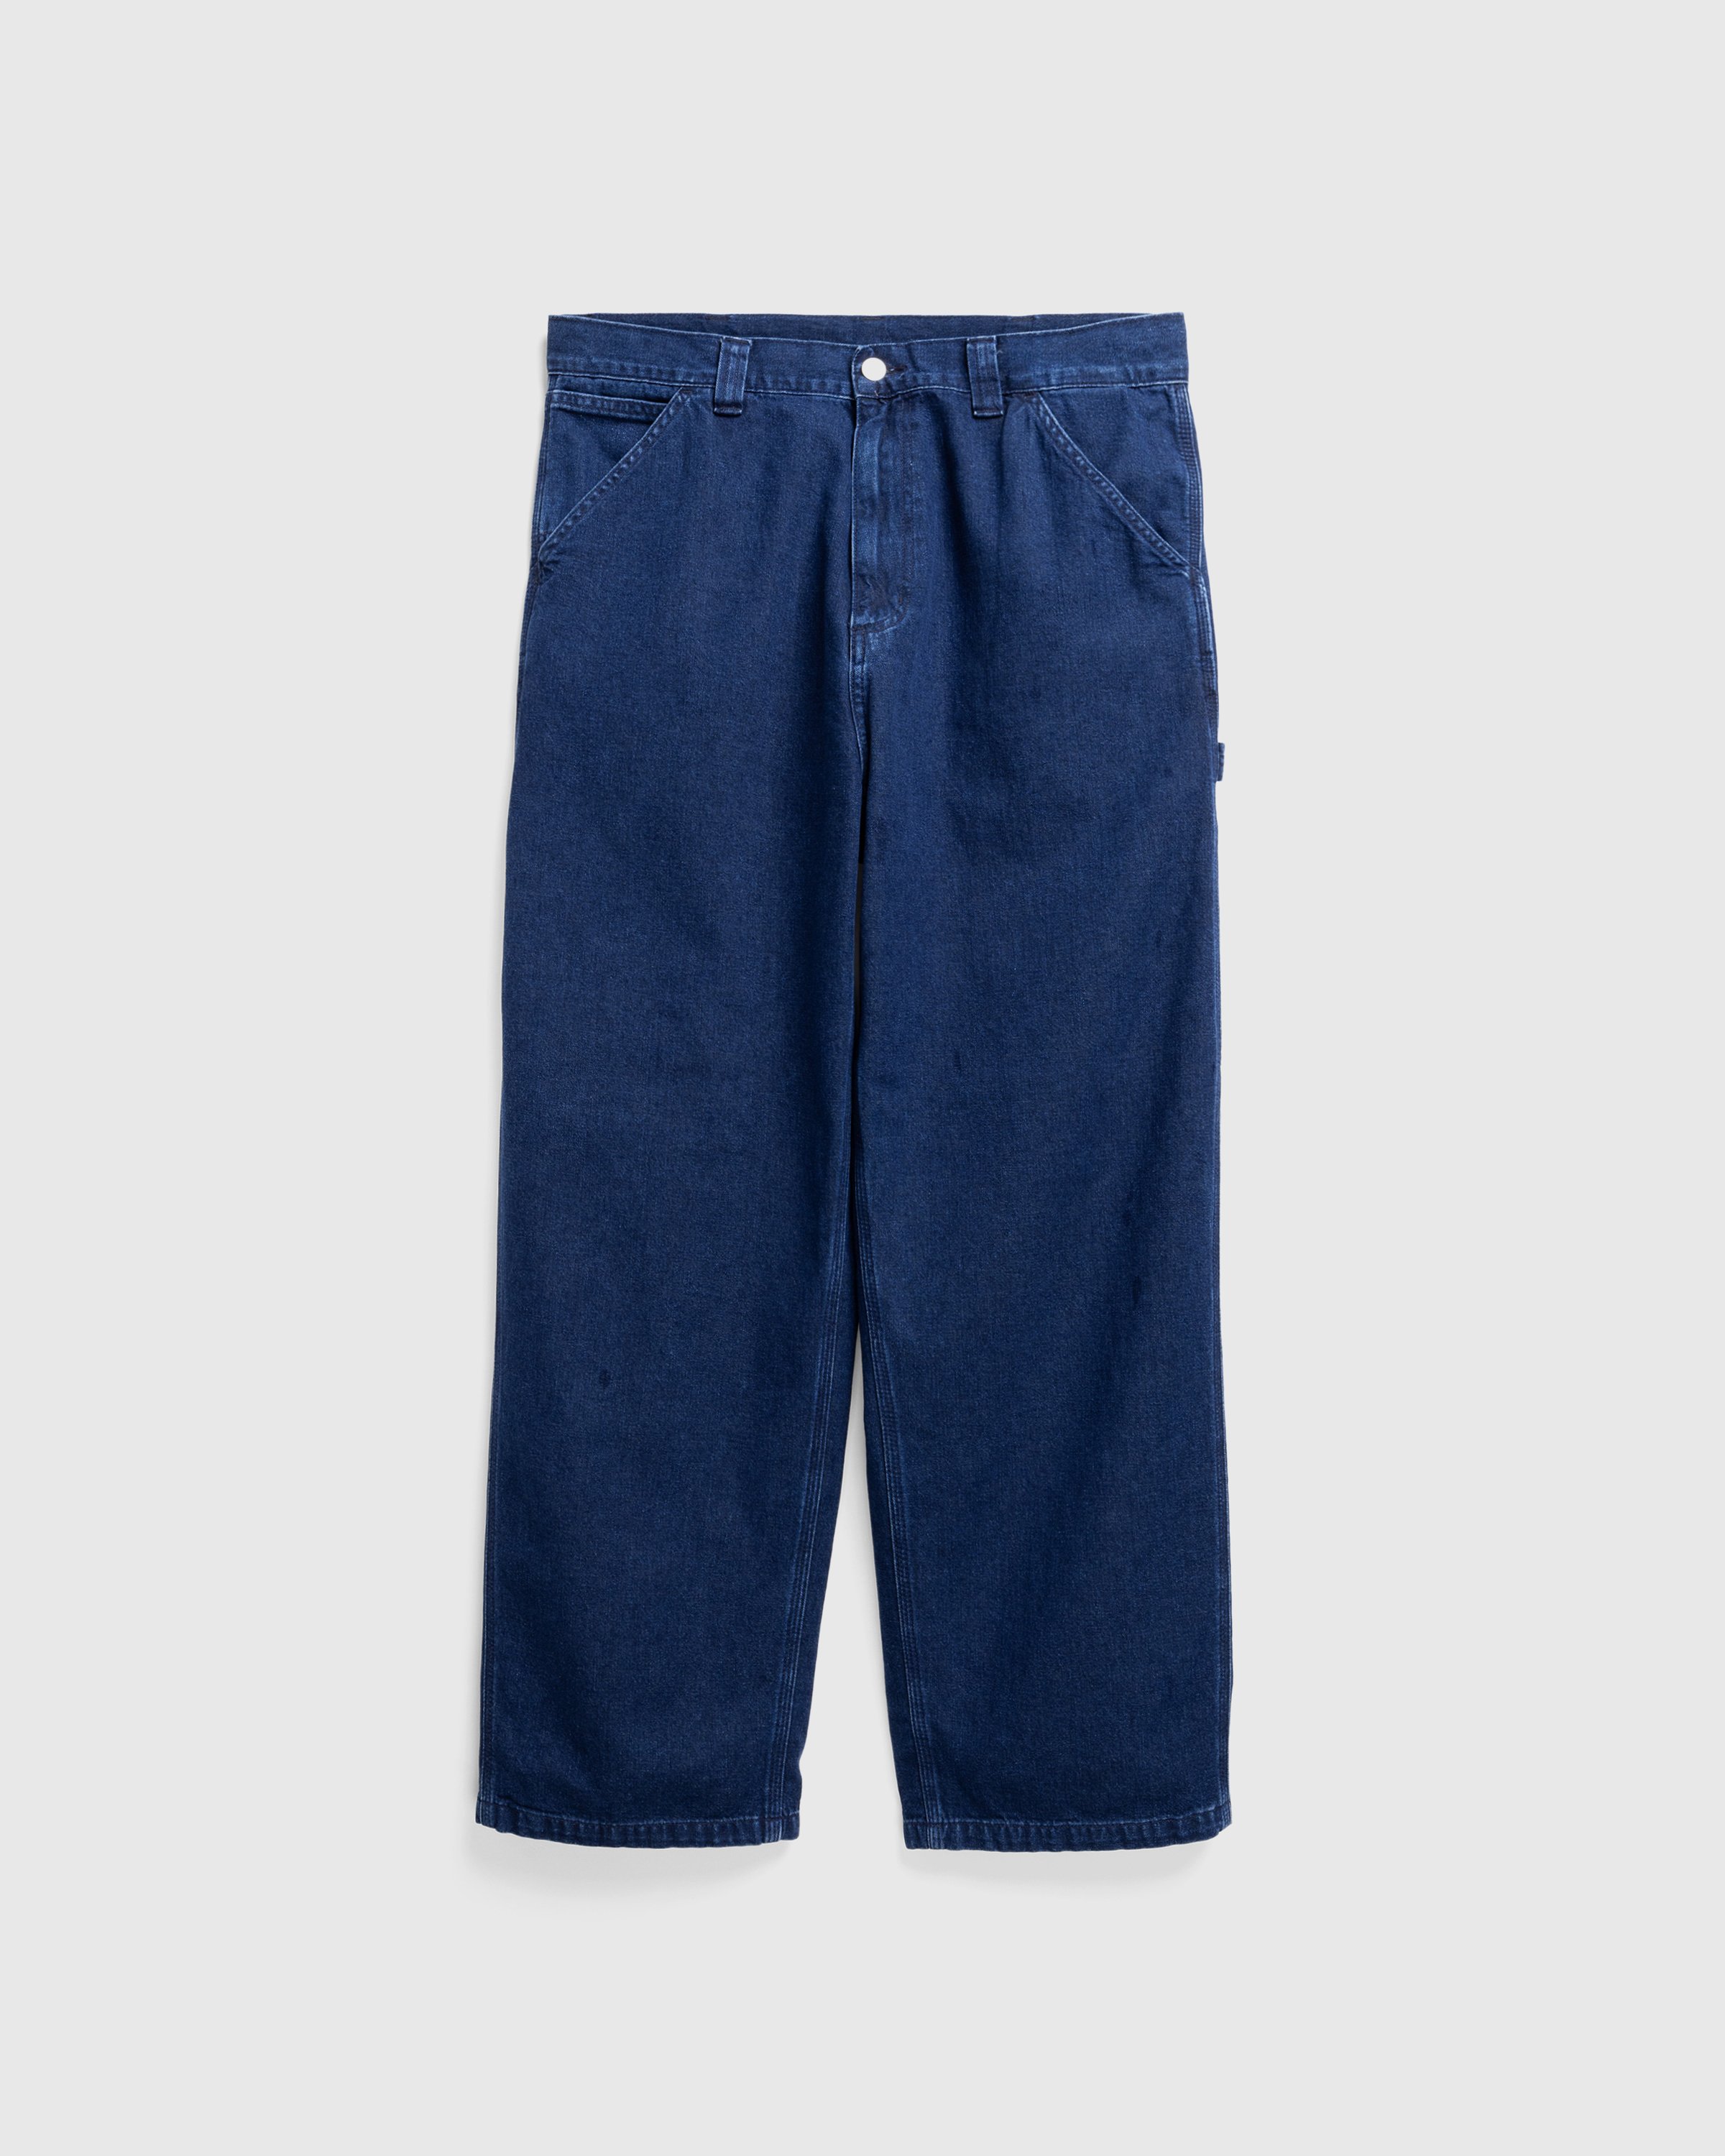 Carhartt WIP - OG Single Knee Pant Blue /stone washed - Clothing - Blue - Image 1